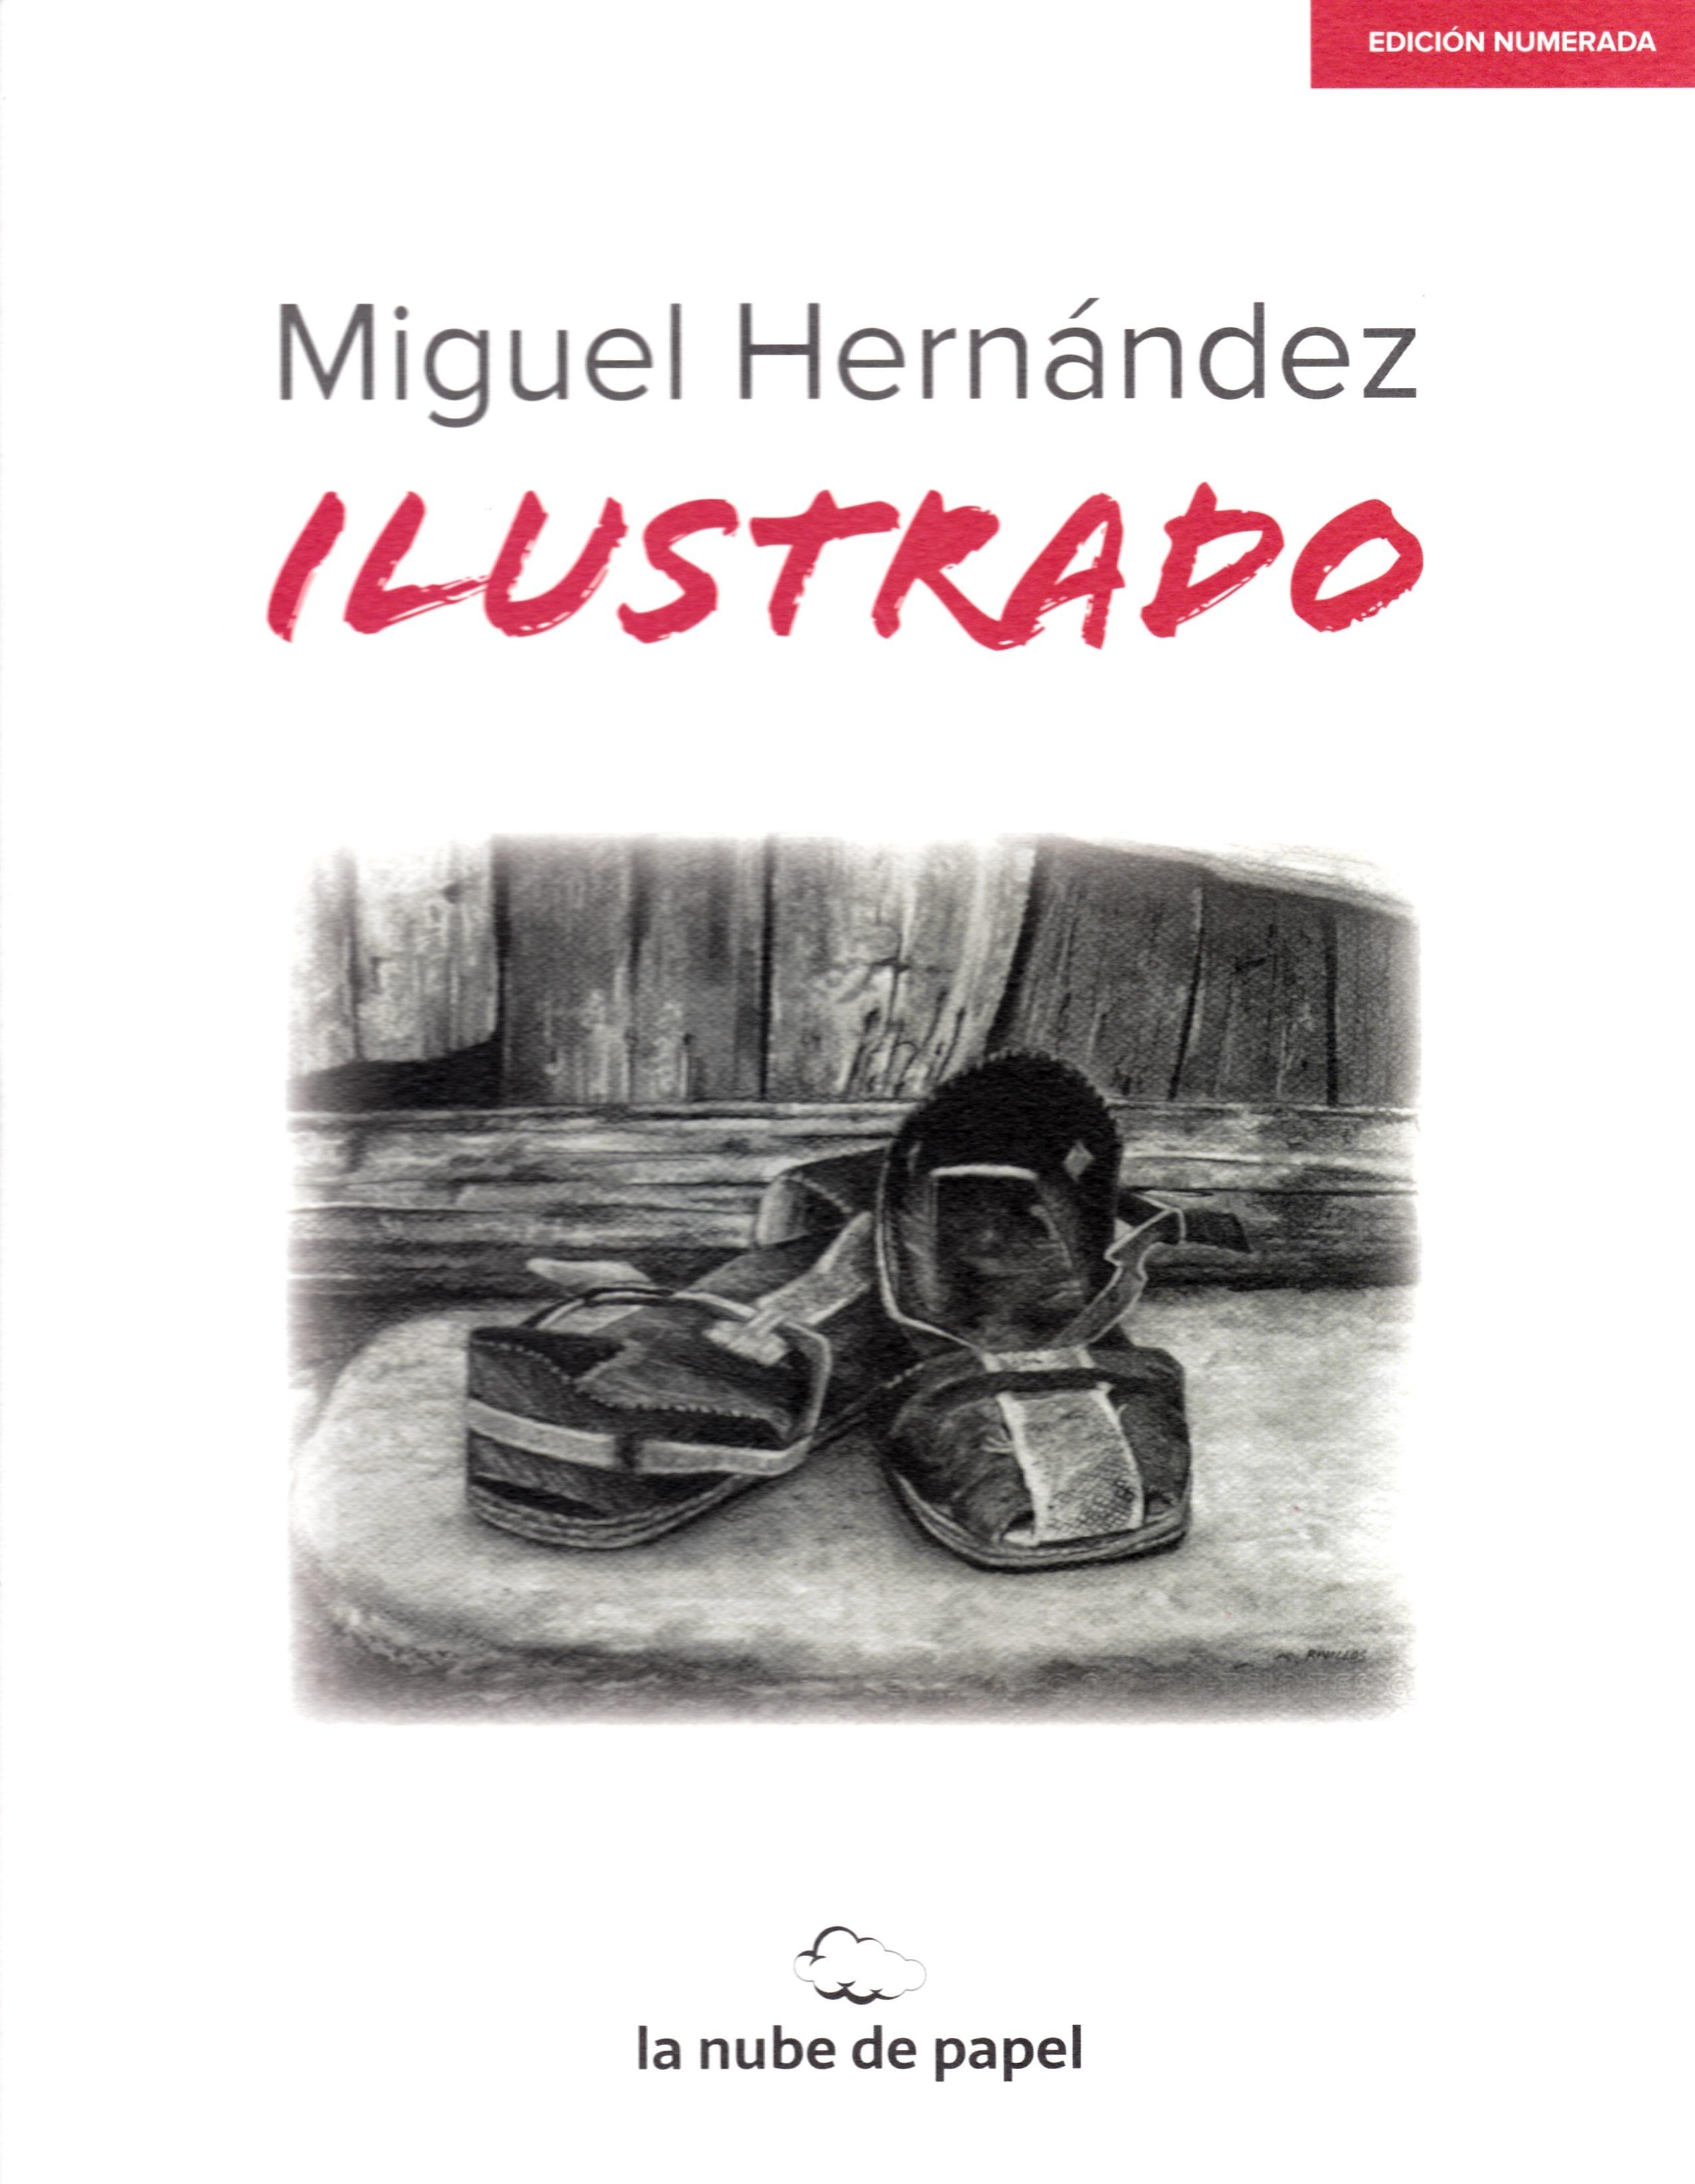 Miguel Hernández "Ilustrado. Edición Numerada". 